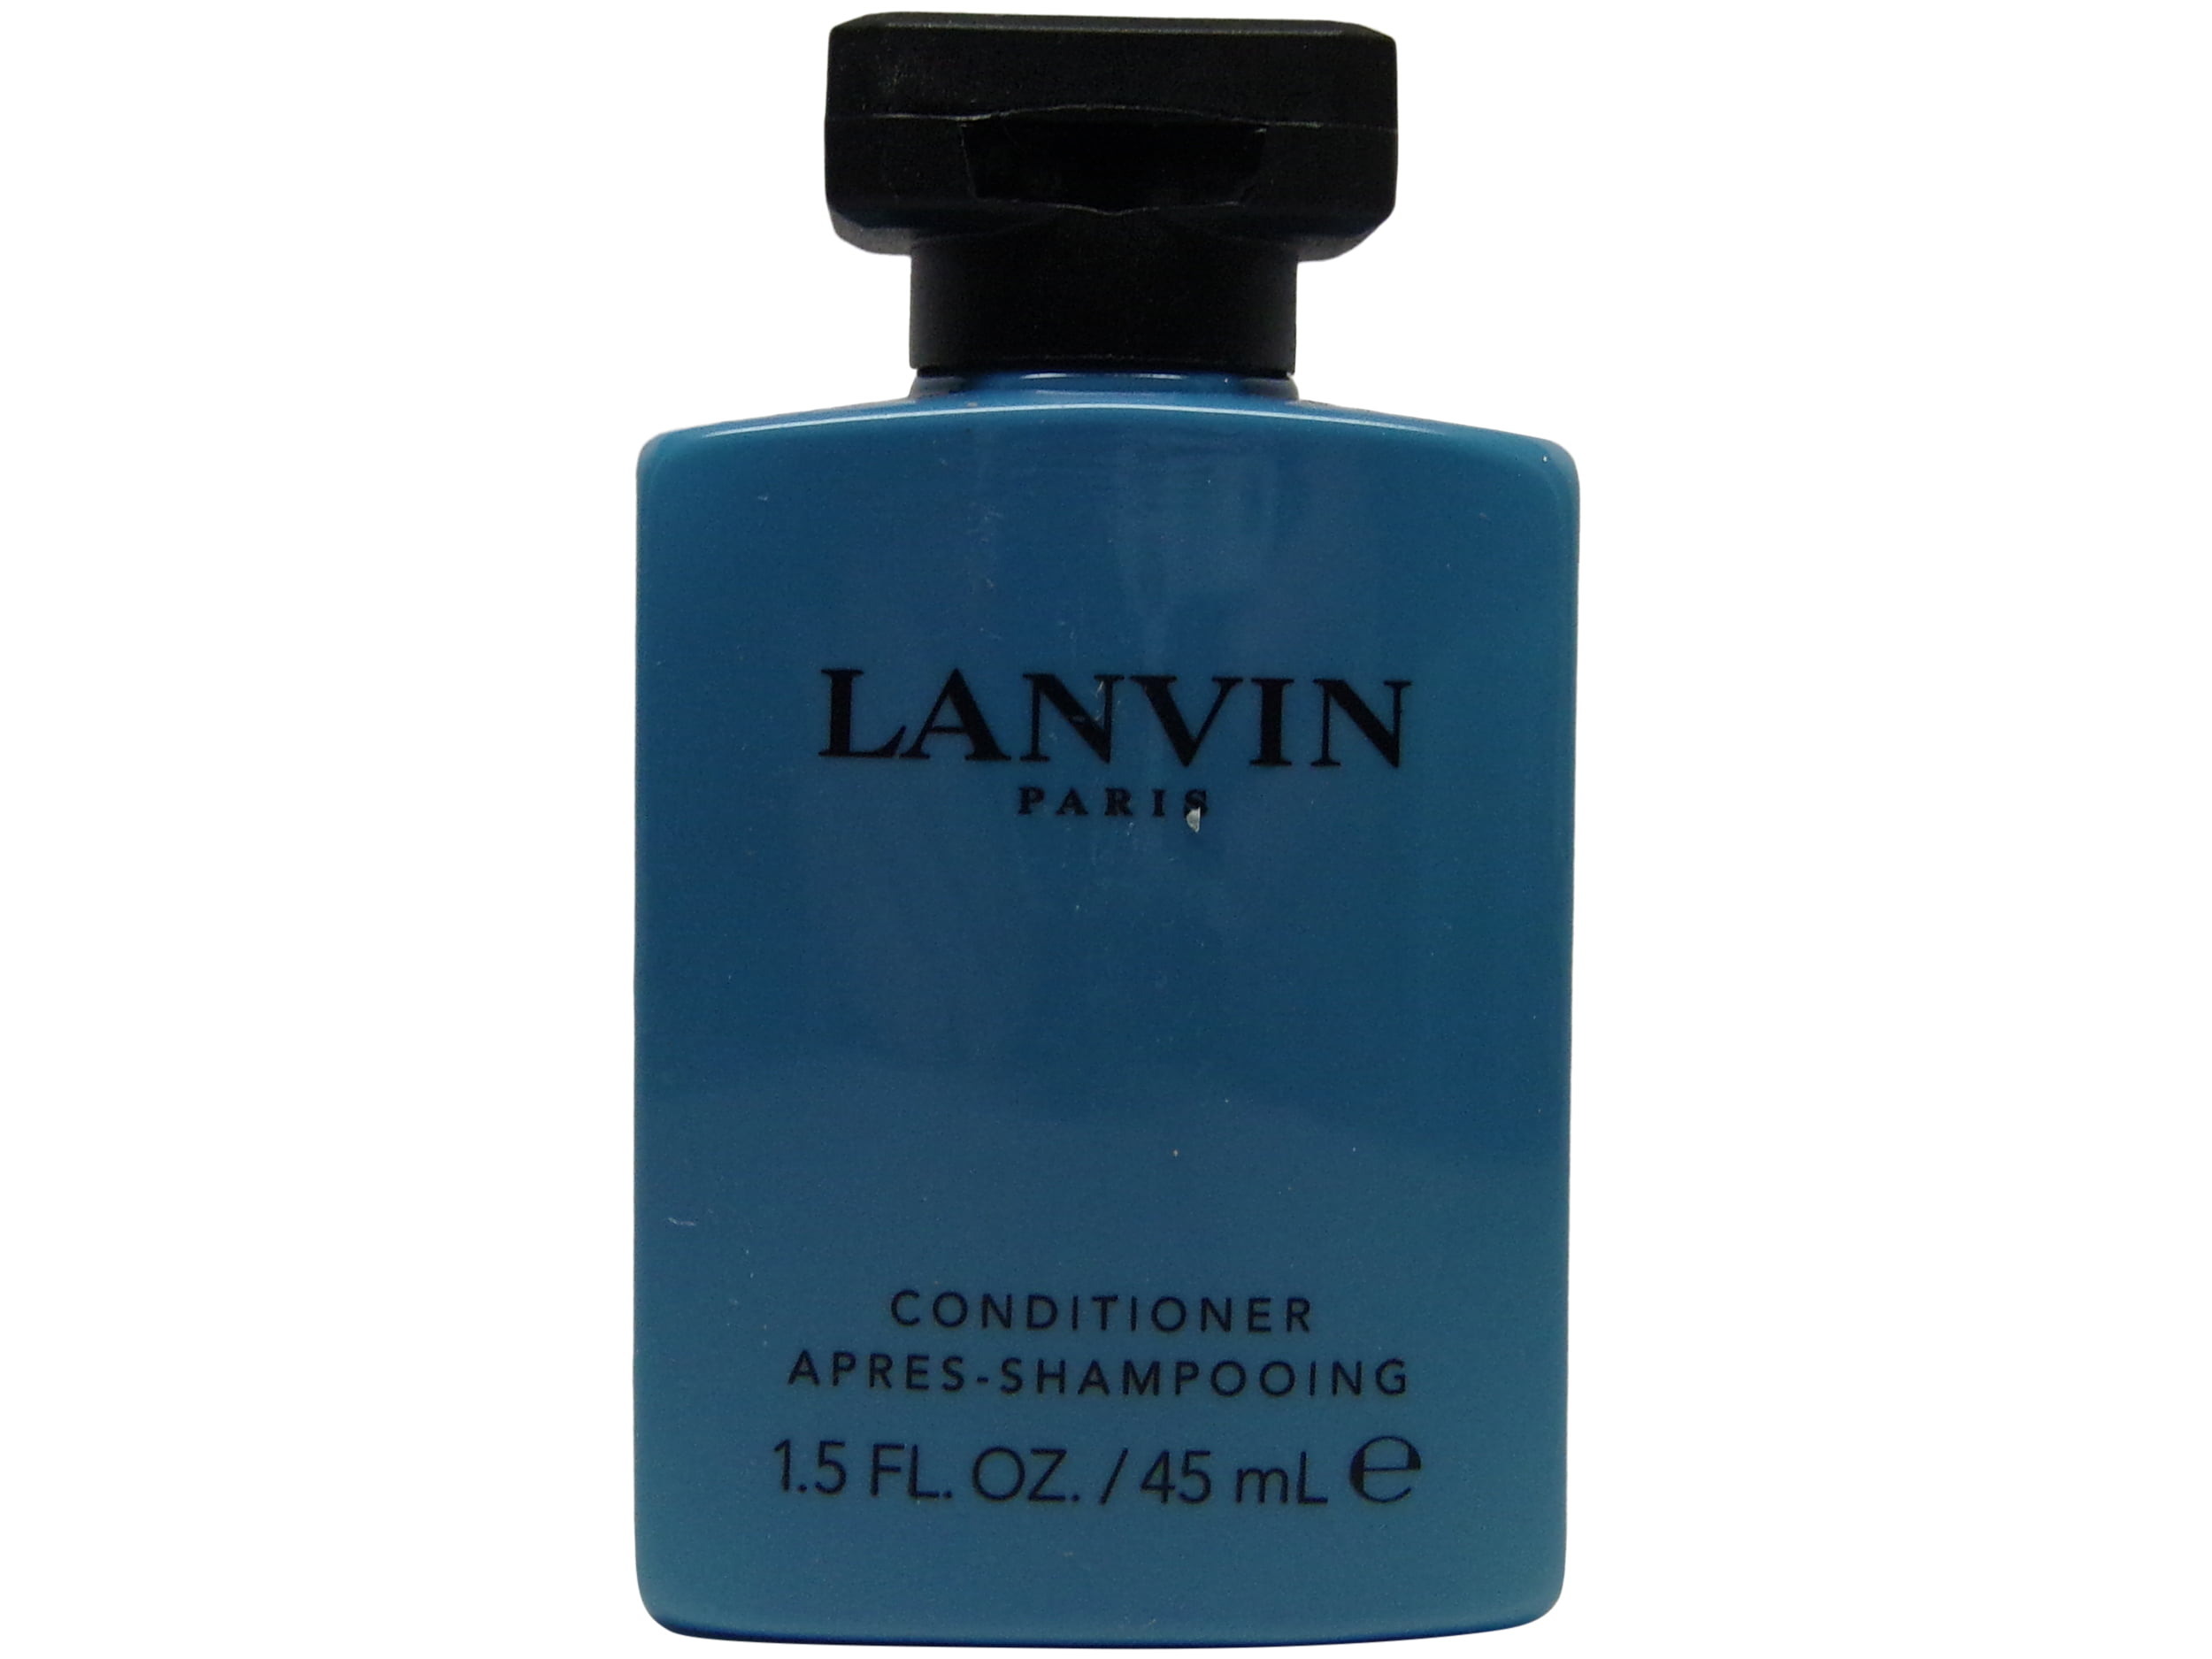 Les Notes de Lanvin Orange Ambre Conditioner Lot of 8 Bottles. Total of ...